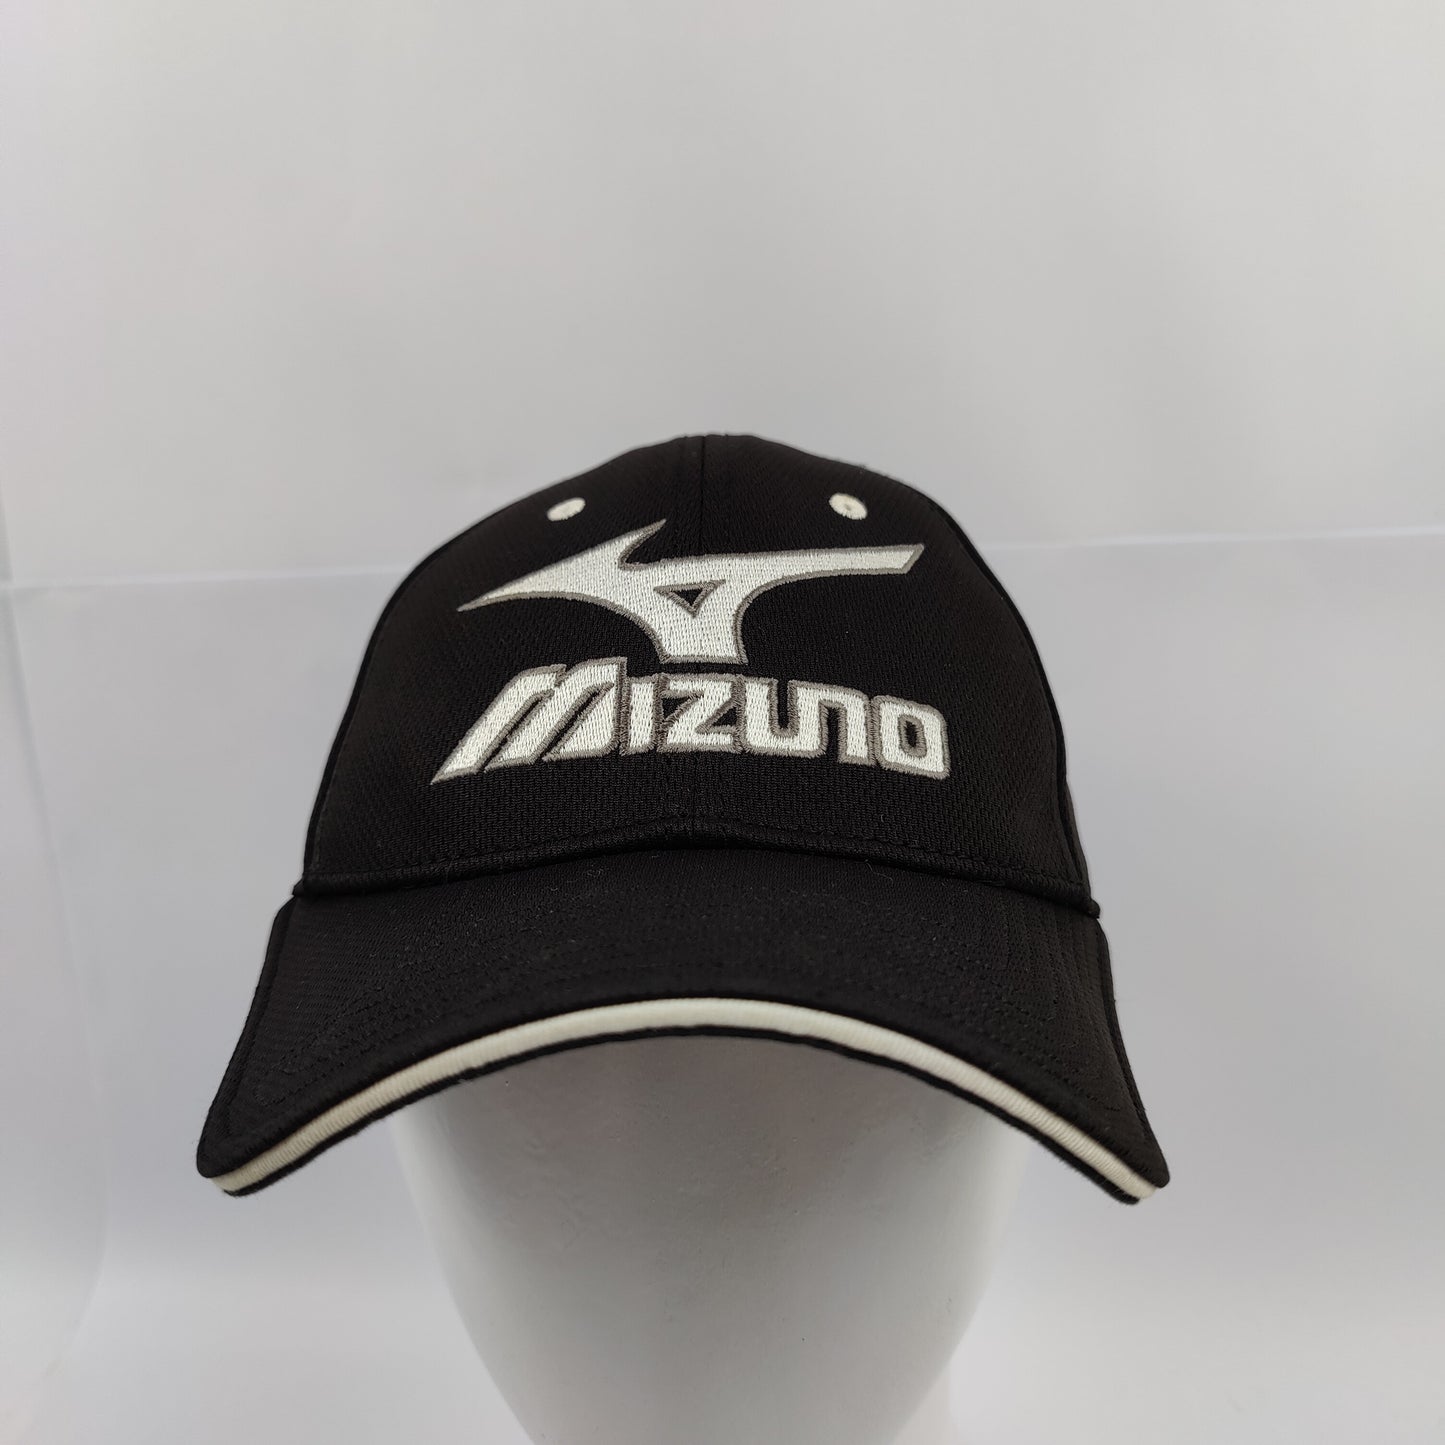 Mizuno Golf Tour Delta Fitted Hat - Black - 1017